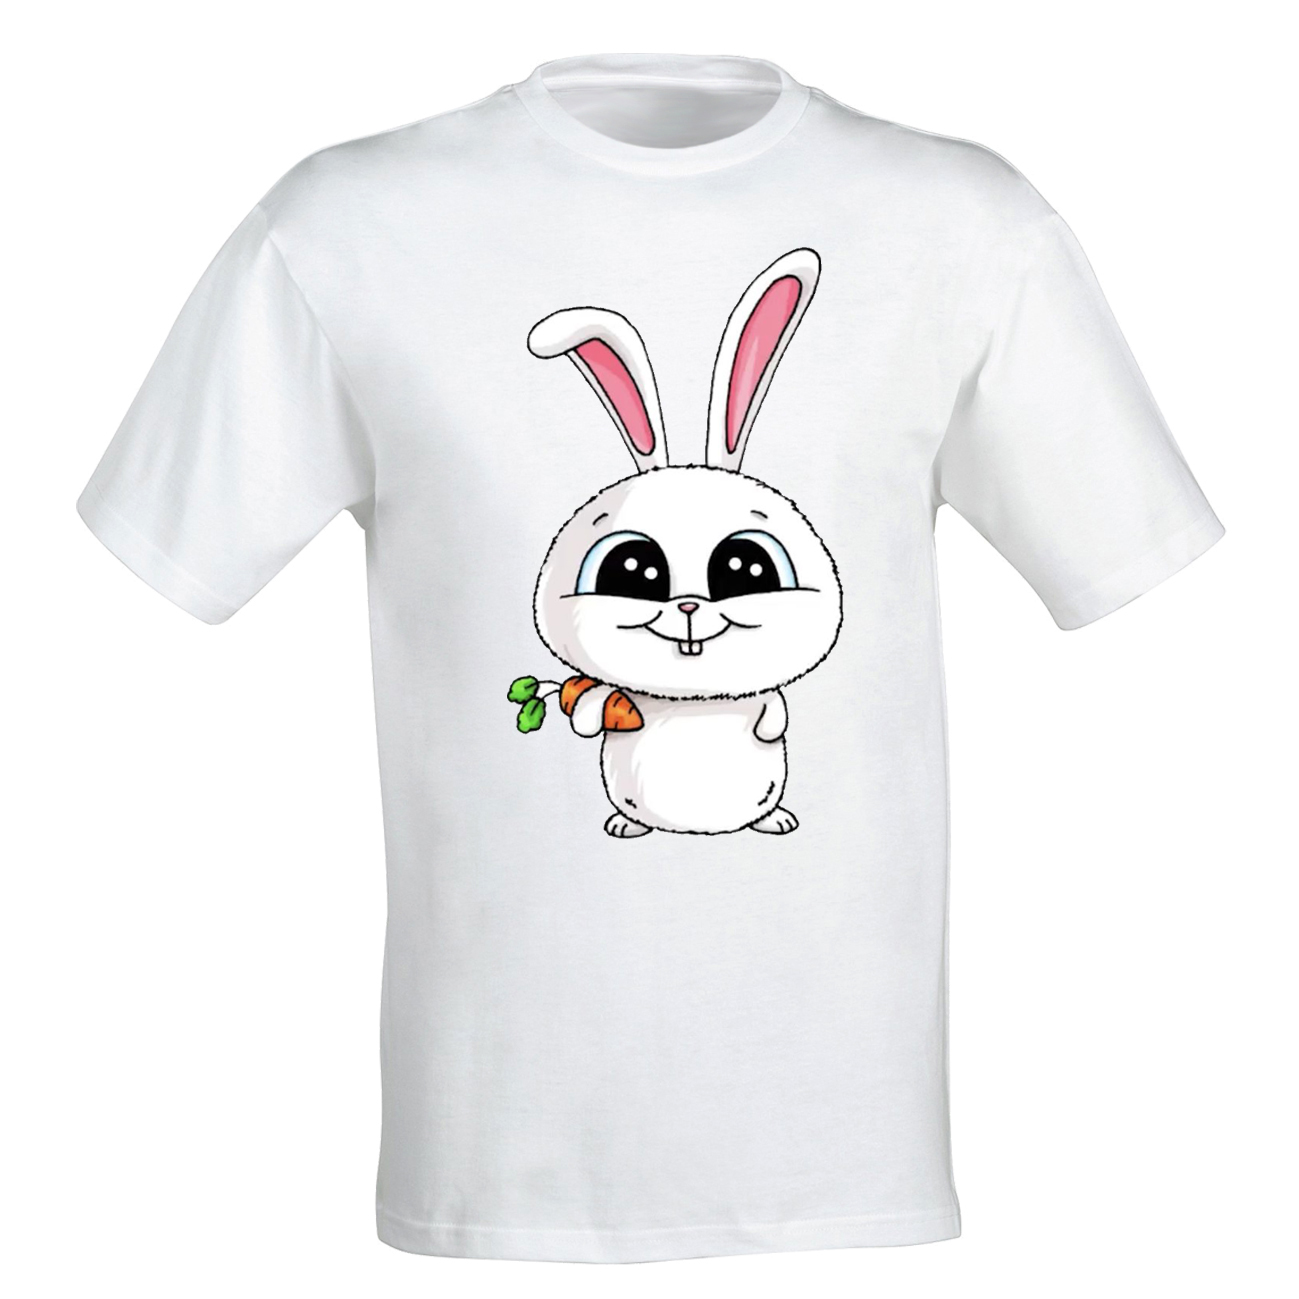 تی شرت آستین کوتاه دخترانه طرح خرگوش کد 200